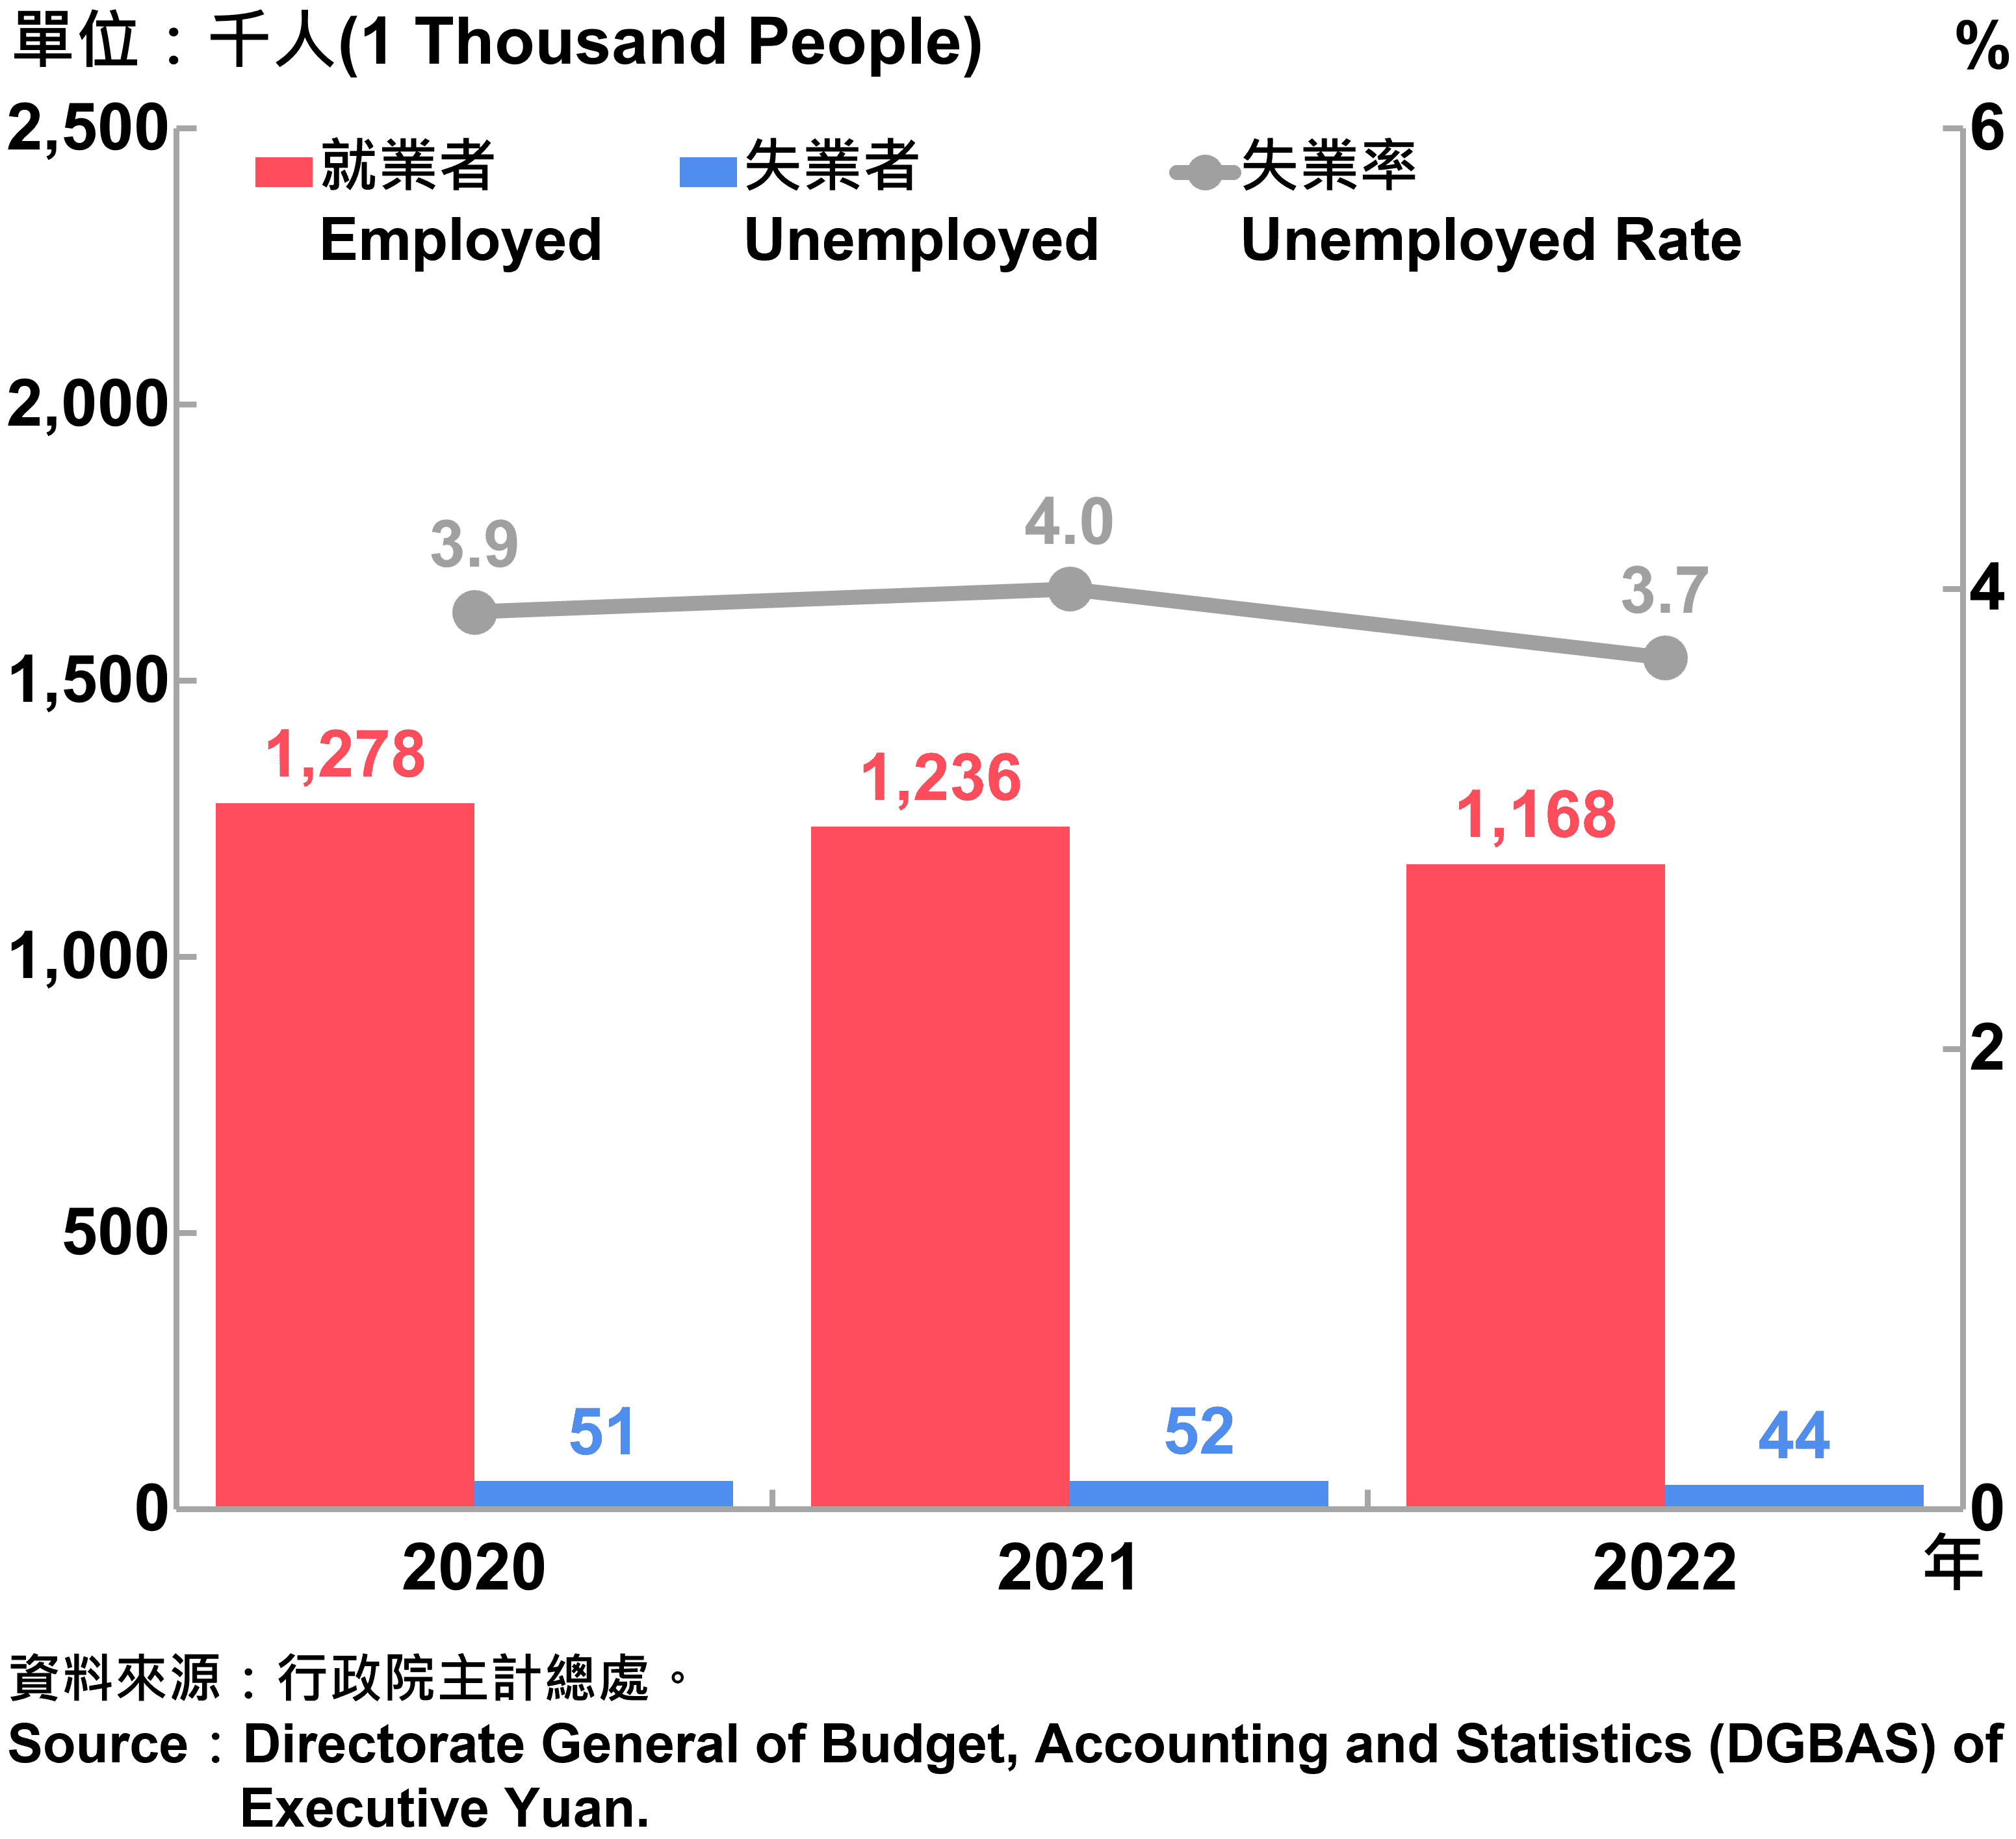 臺北市勞動力人數統計—2022 Labor Force Statistics in Taipei City—2022